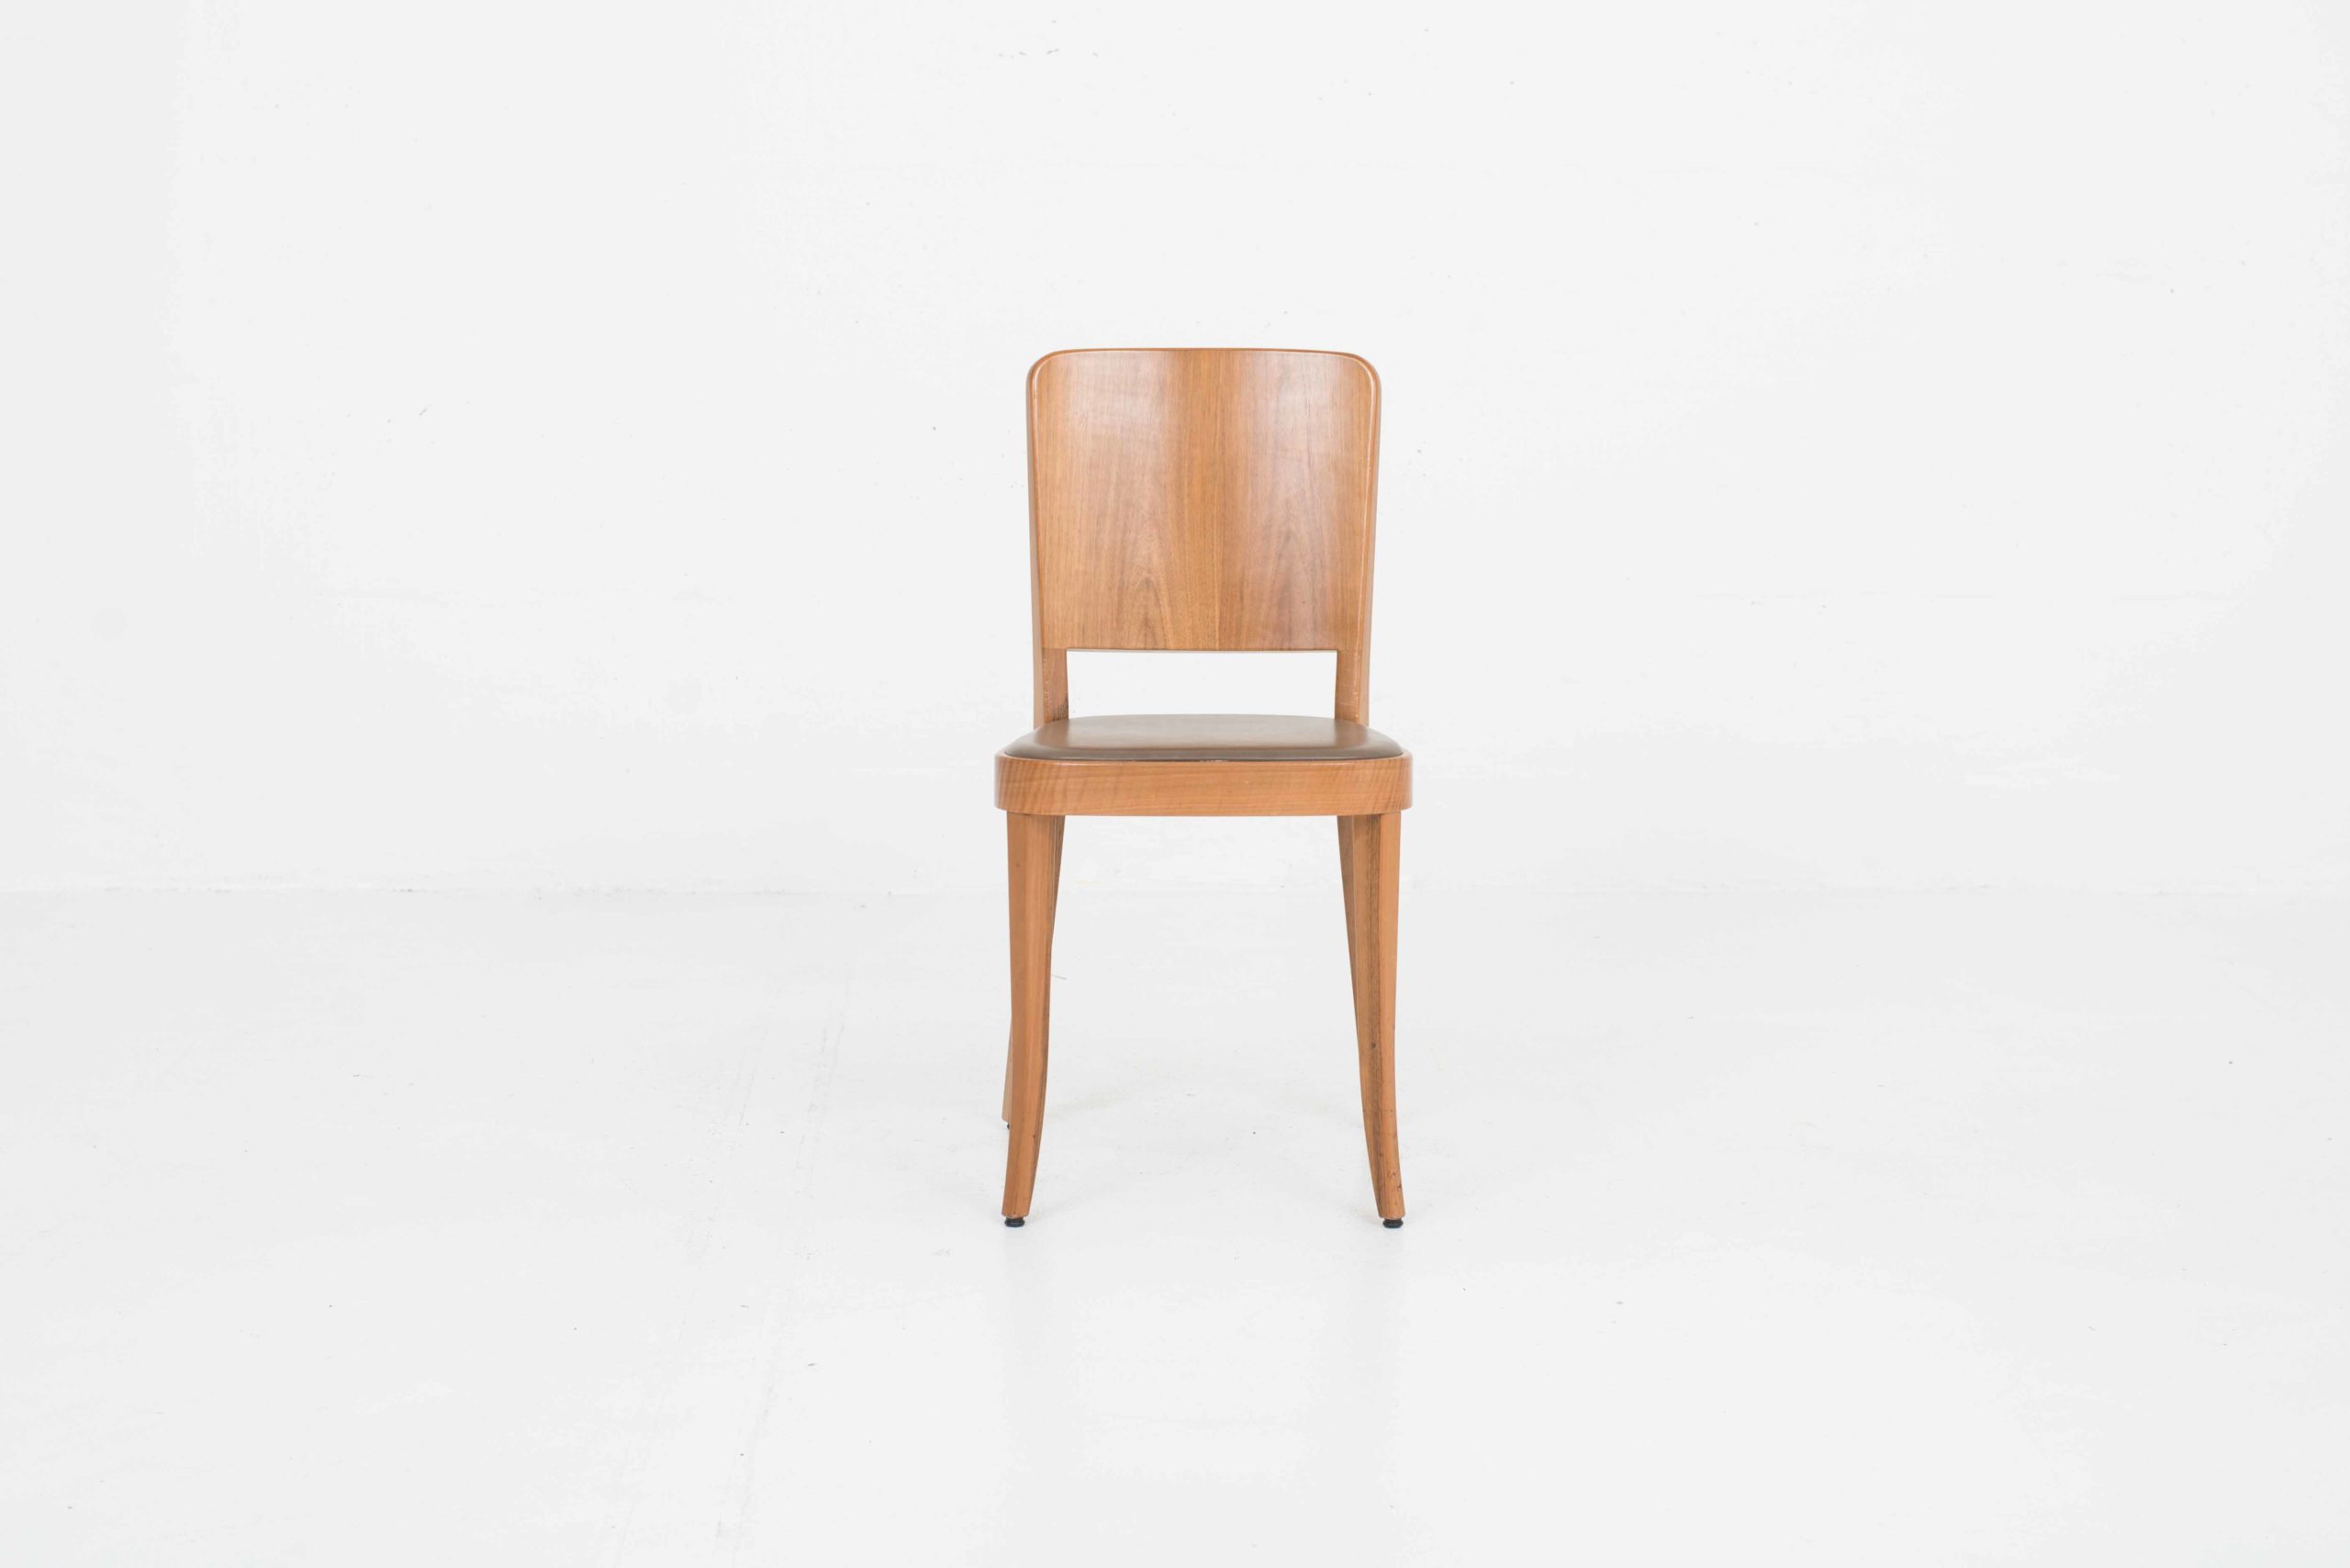 Horgenglarus 1-793 Stühle von Max Ernst Haefeli, im Zweierset-4